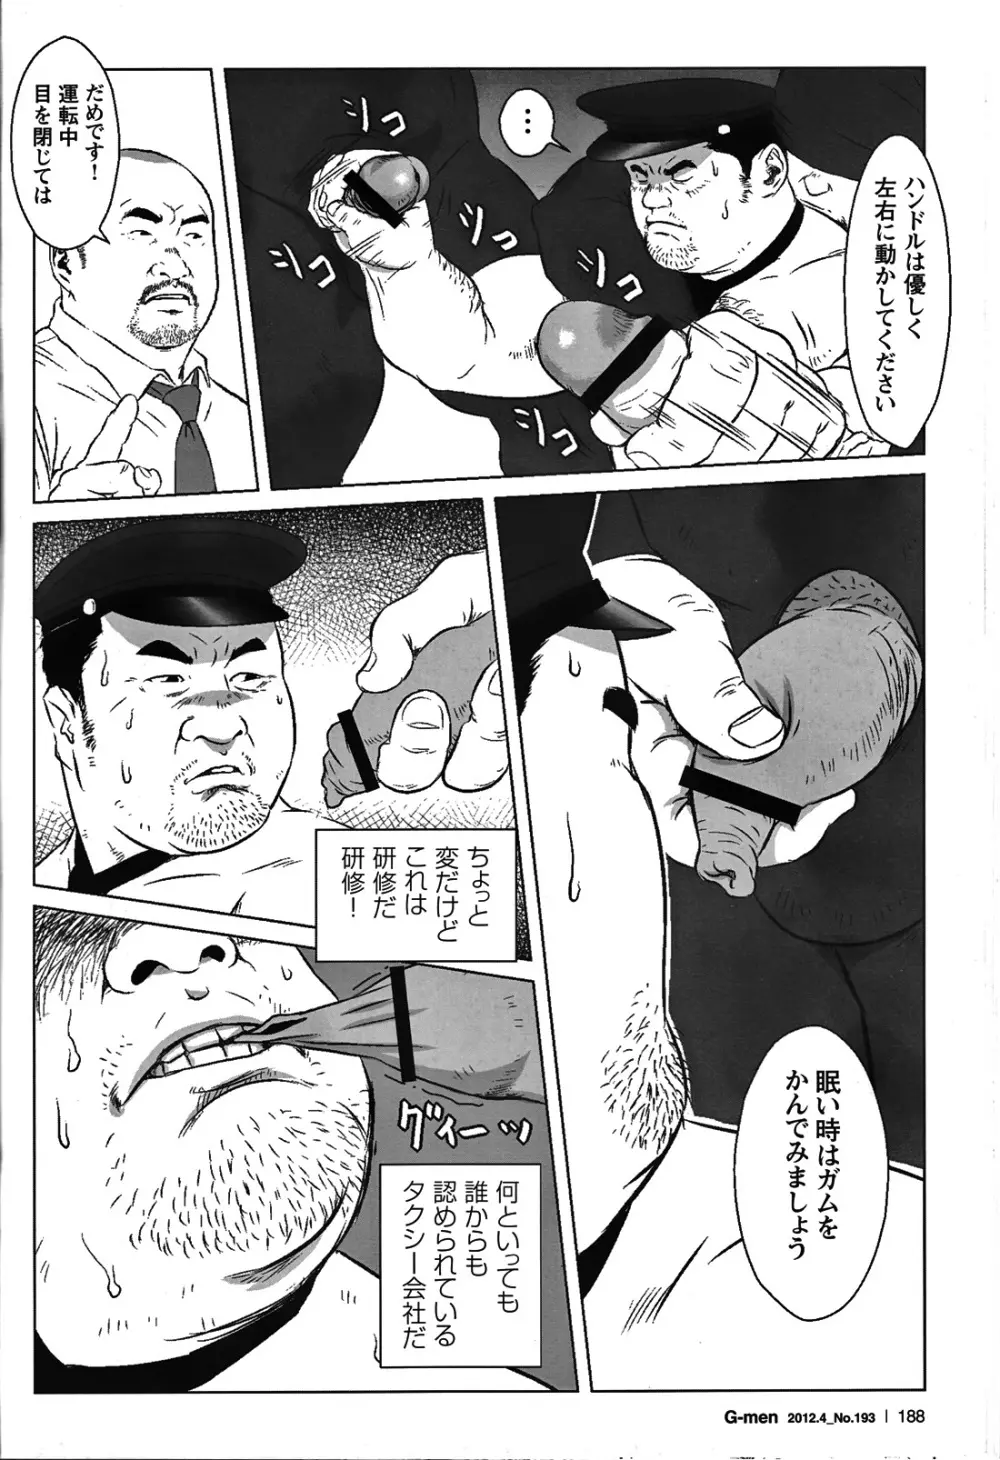 Comic G-men Gaho No.05 174ページ